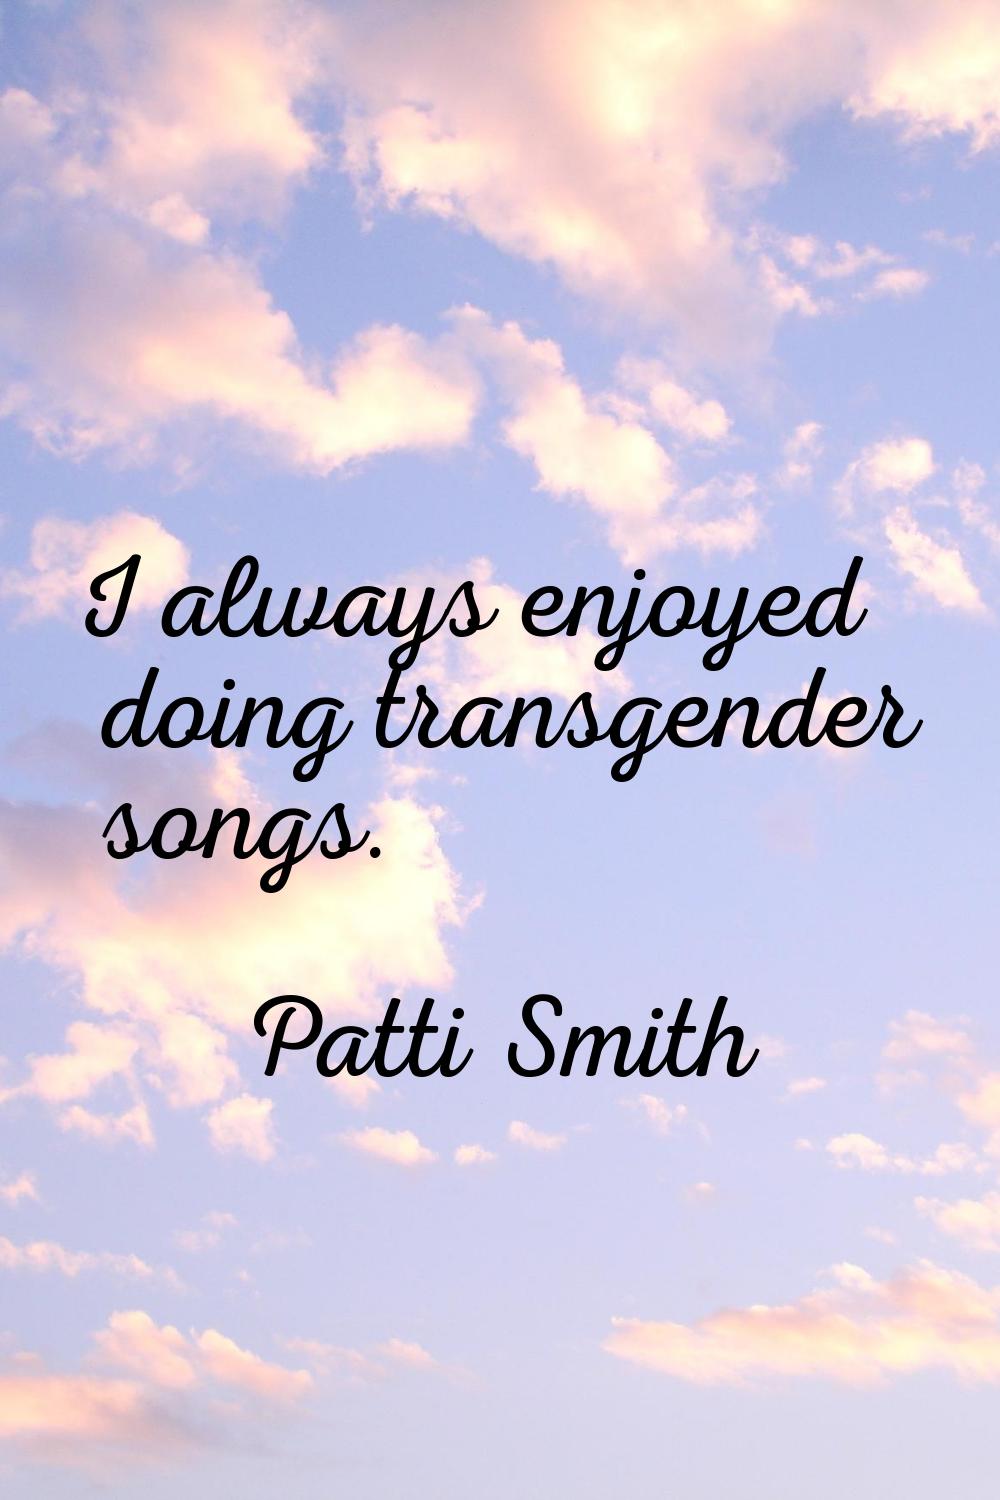 I always enjoyed doing transgender songs.